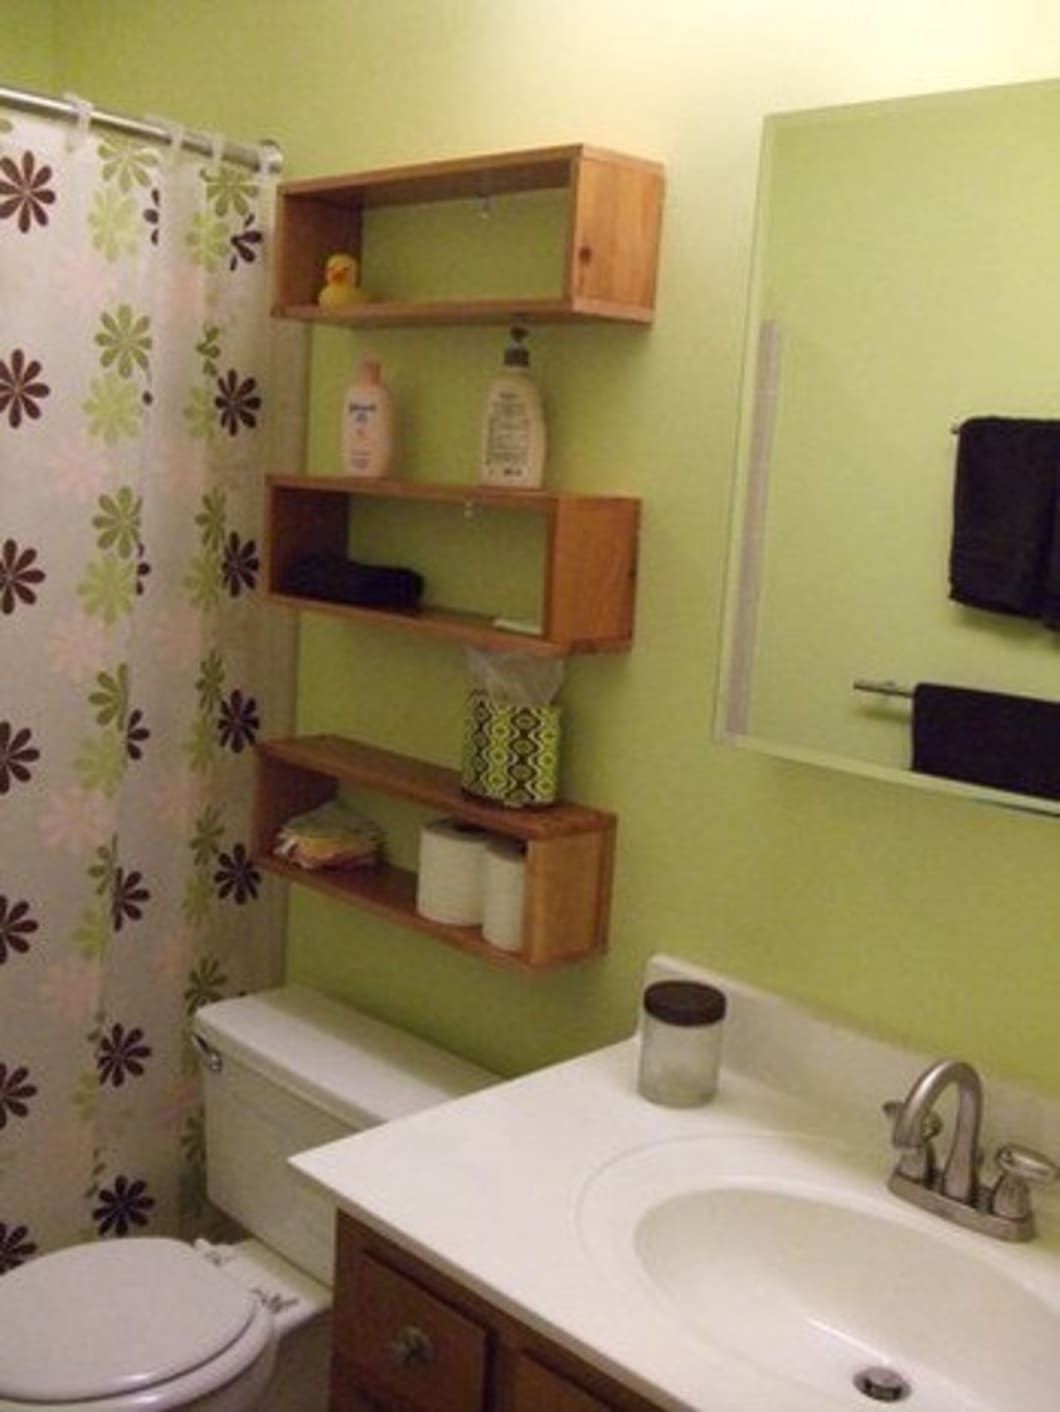 Shelves above toilet